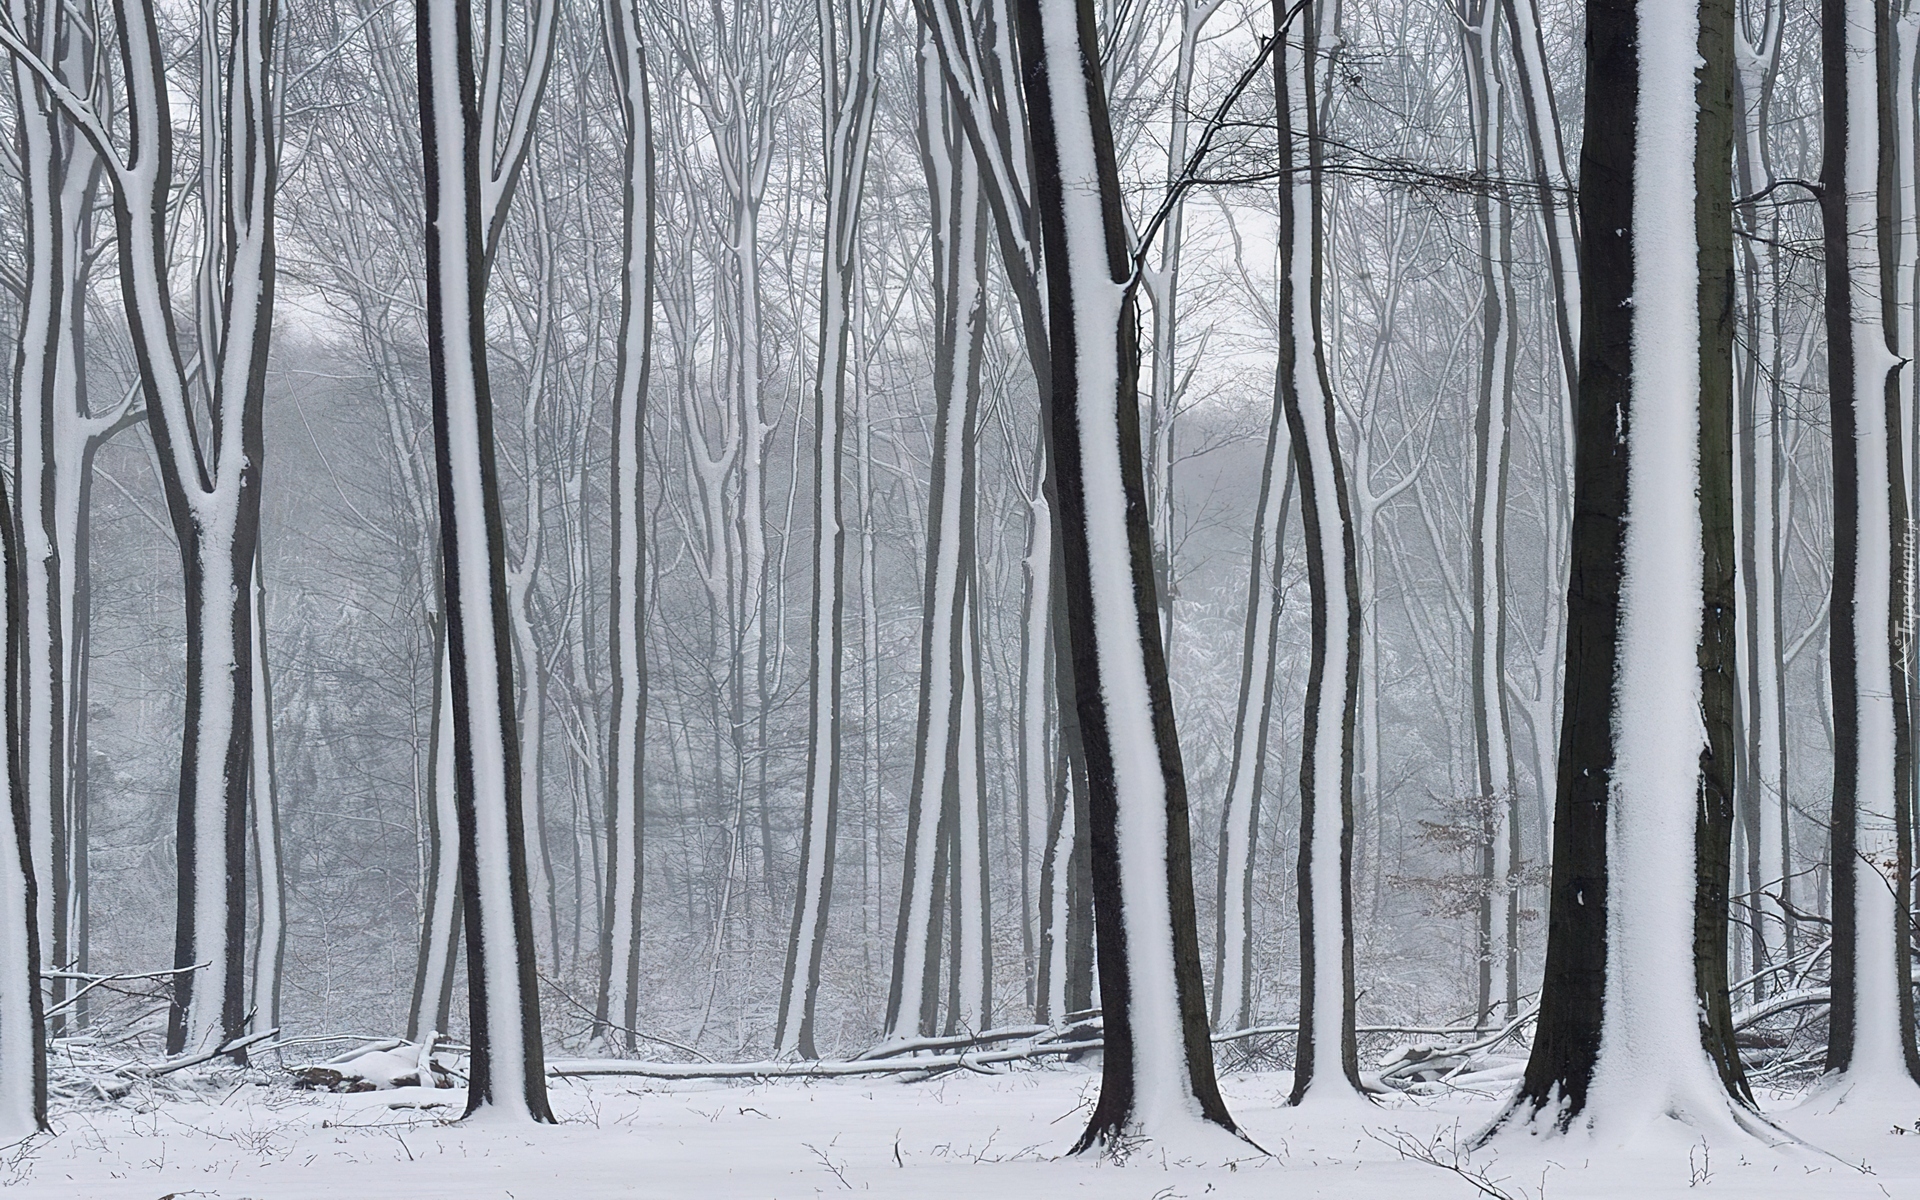 Las, Drzewa, Śnieżne, Pasy